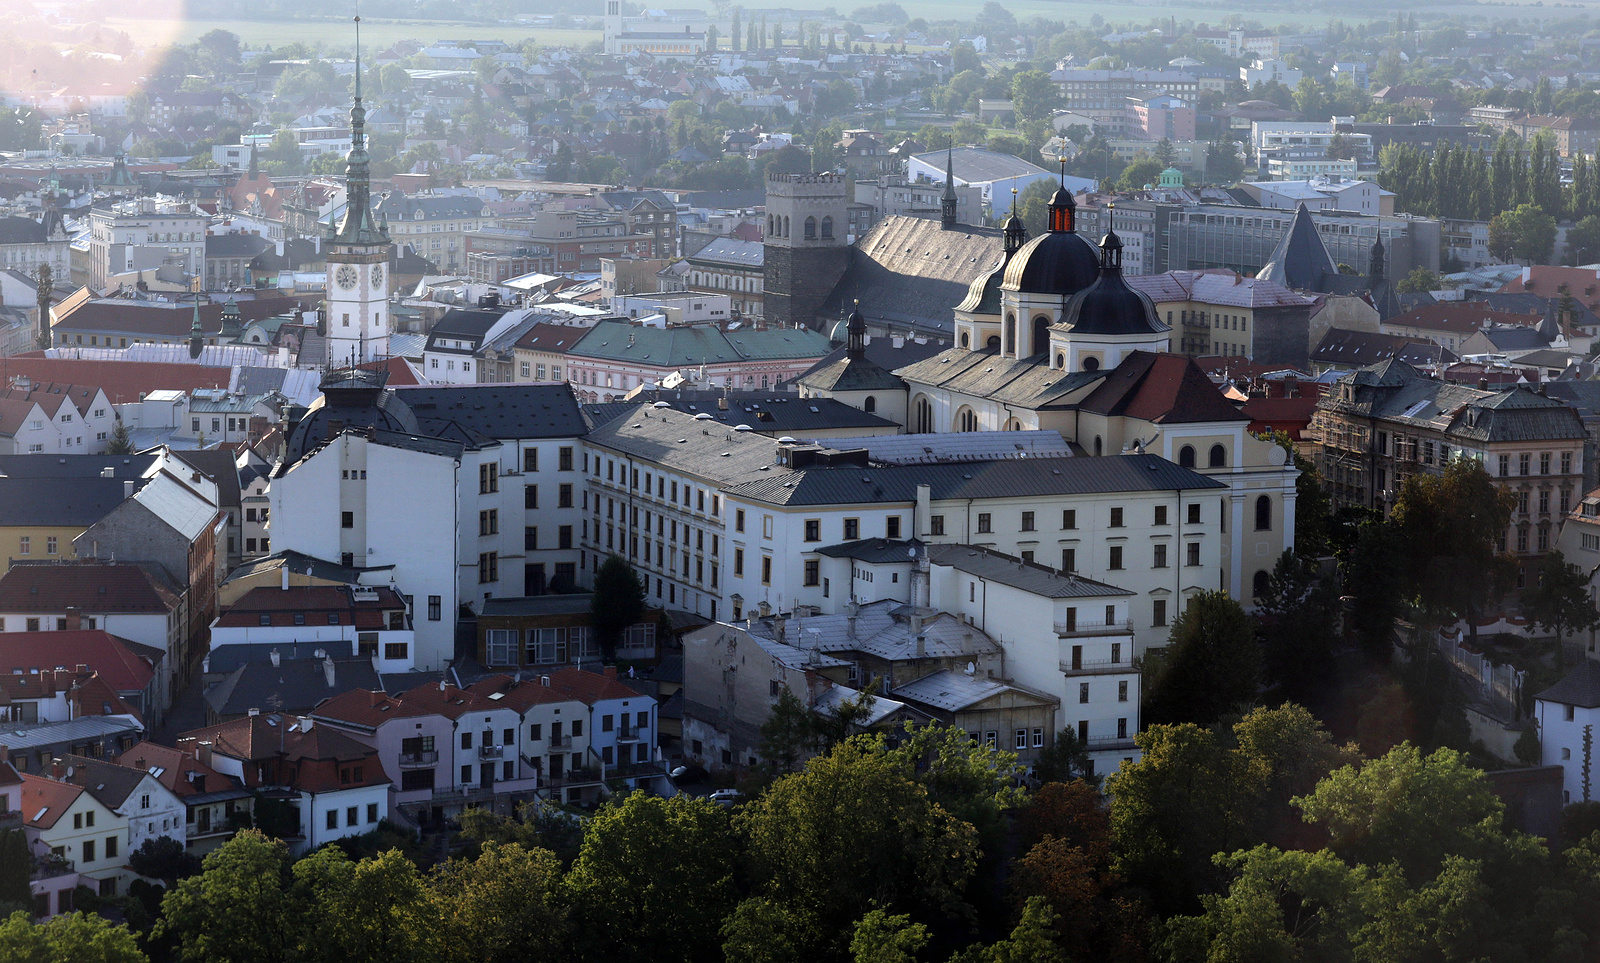 FOTO, VIDEO: Balonová show ozdobila nebe nad Olomoucí. Podívejte se -  Šumperský a jesenický deník